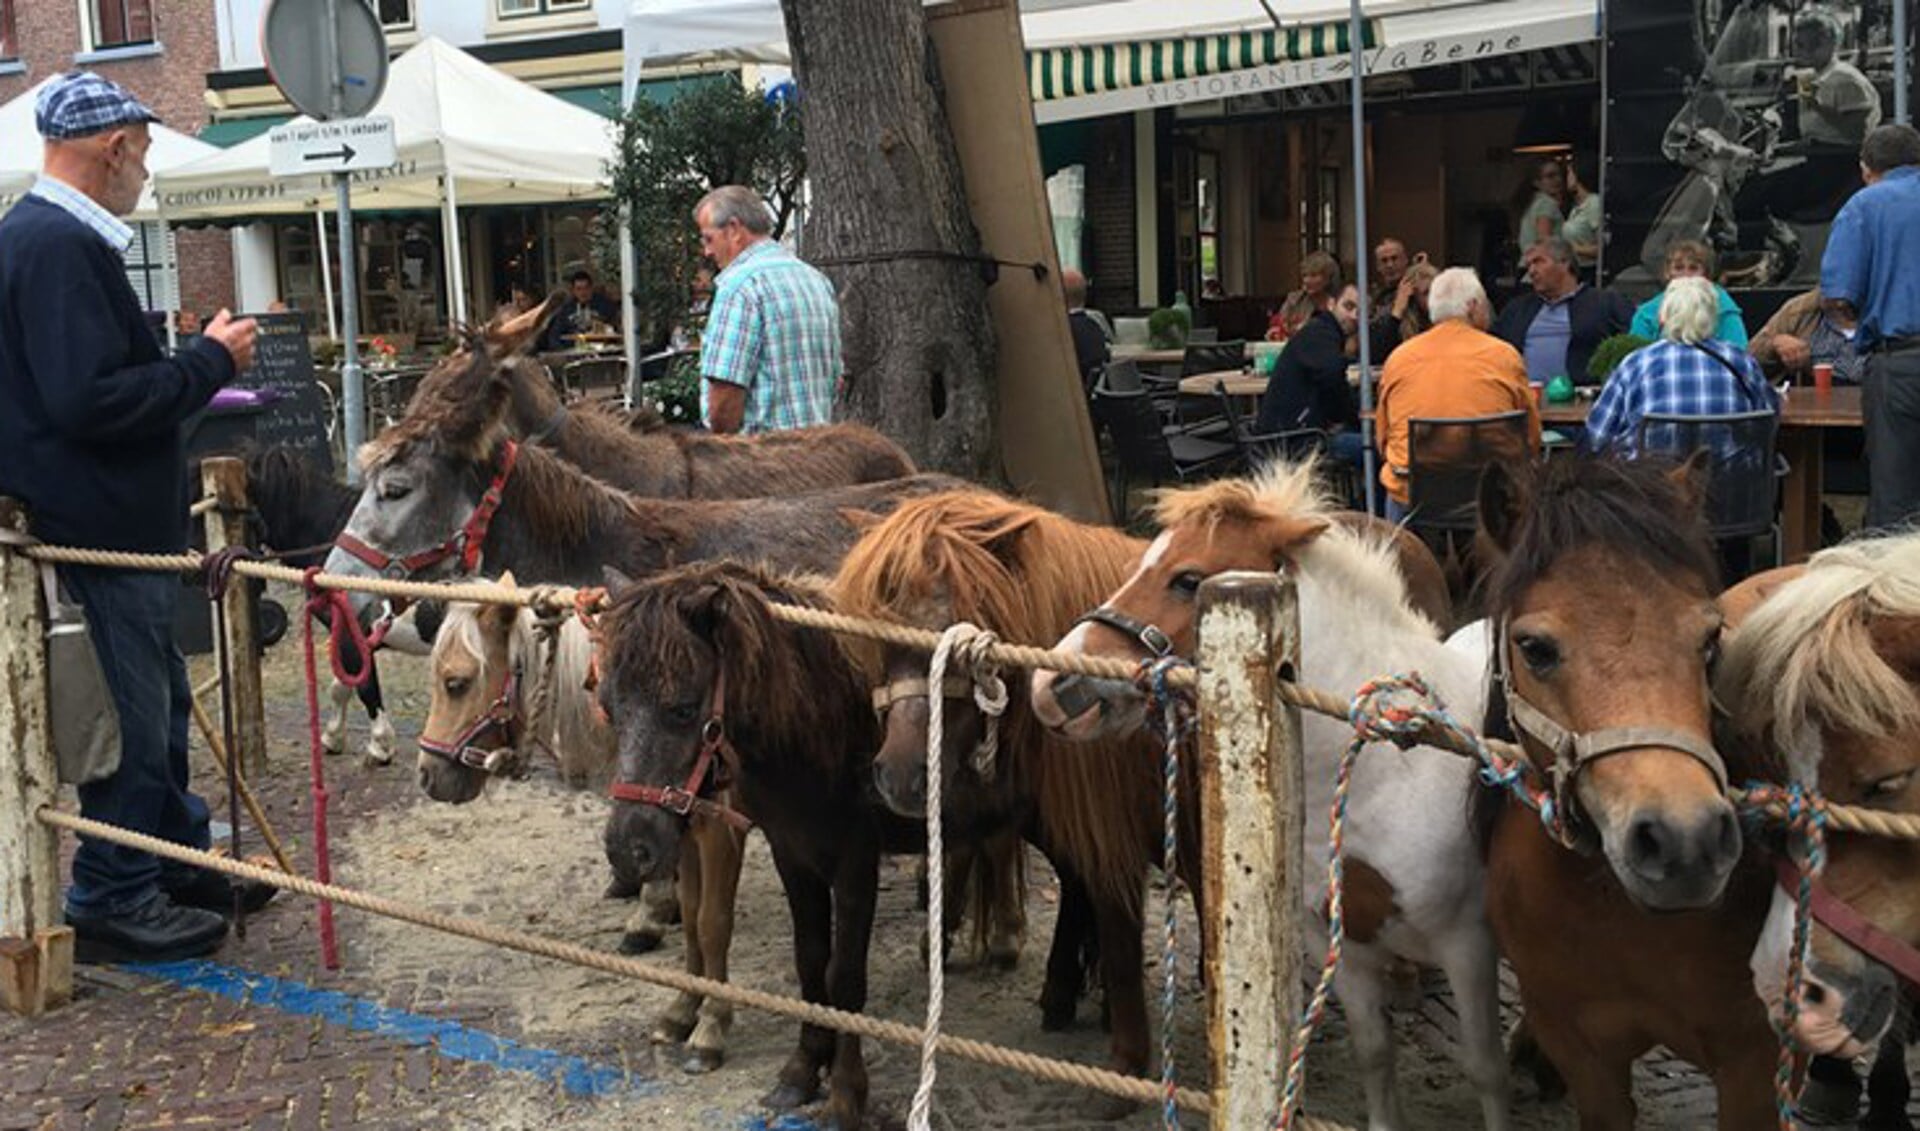 Ook dit jaar verwacht de organisatie weer tientallen paarden op de Voorstraat. Foto: Nelleke de Vries